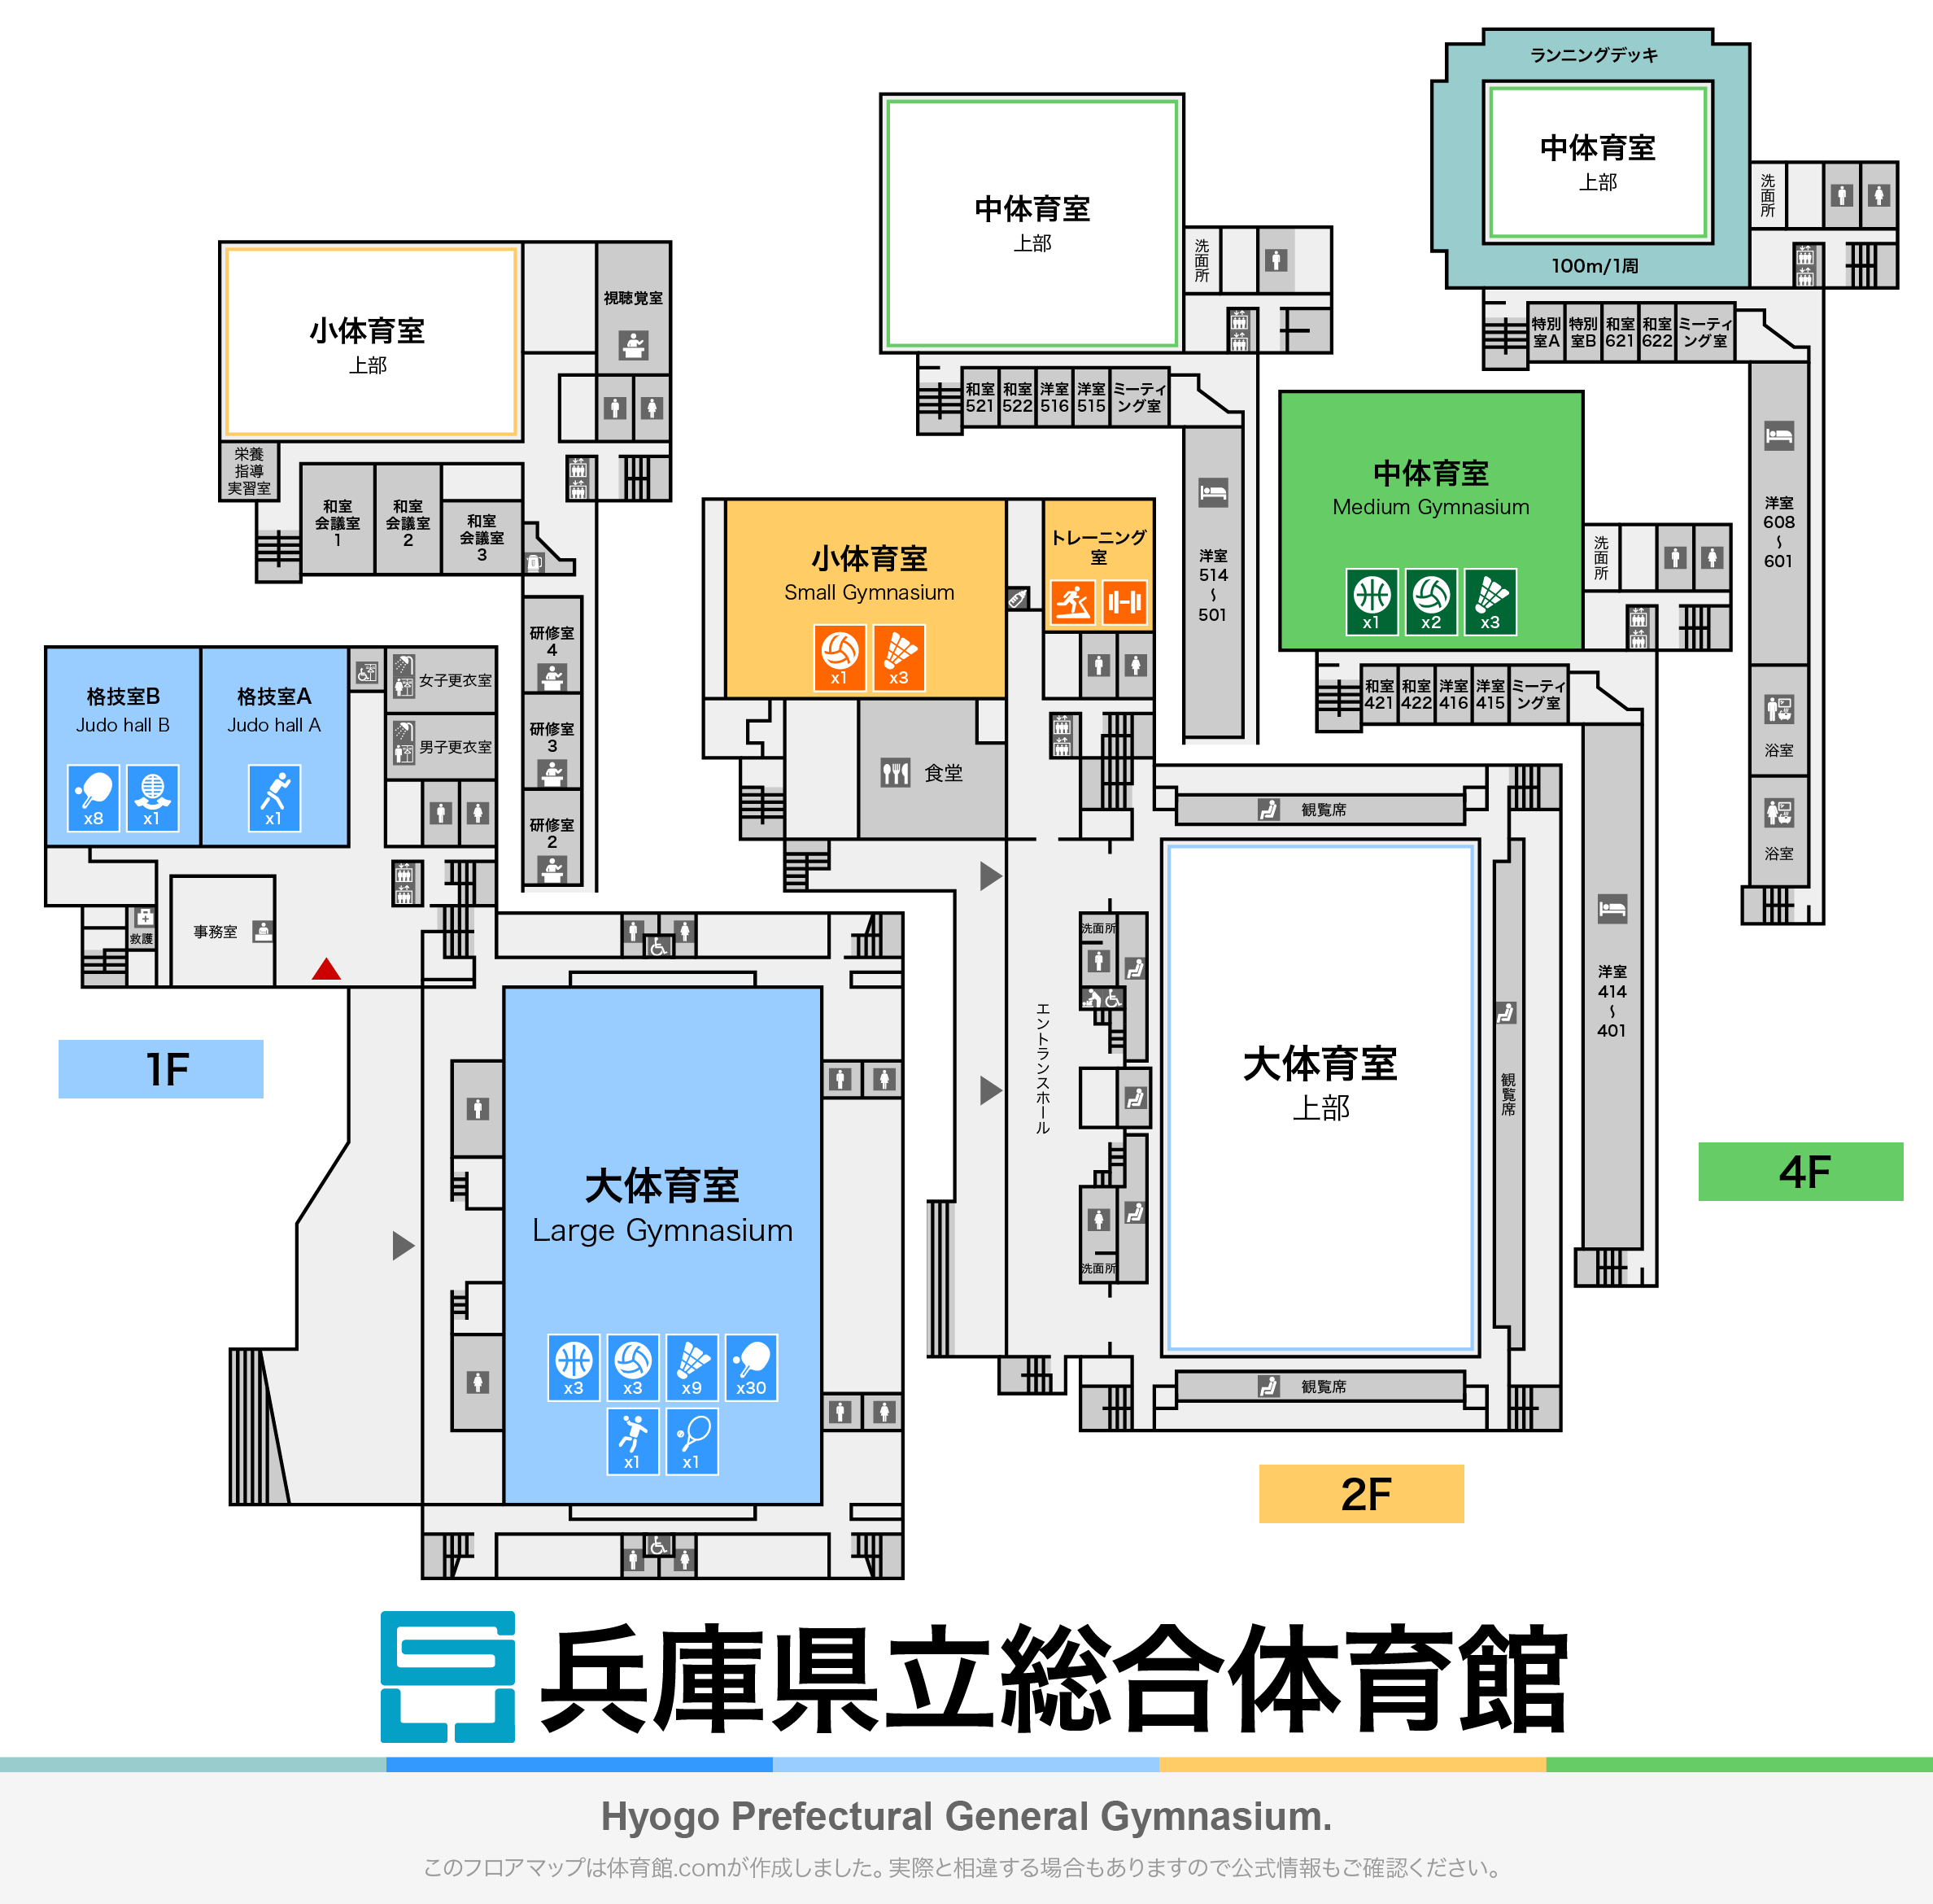 兵庫県立総合体育館のフロアマップ